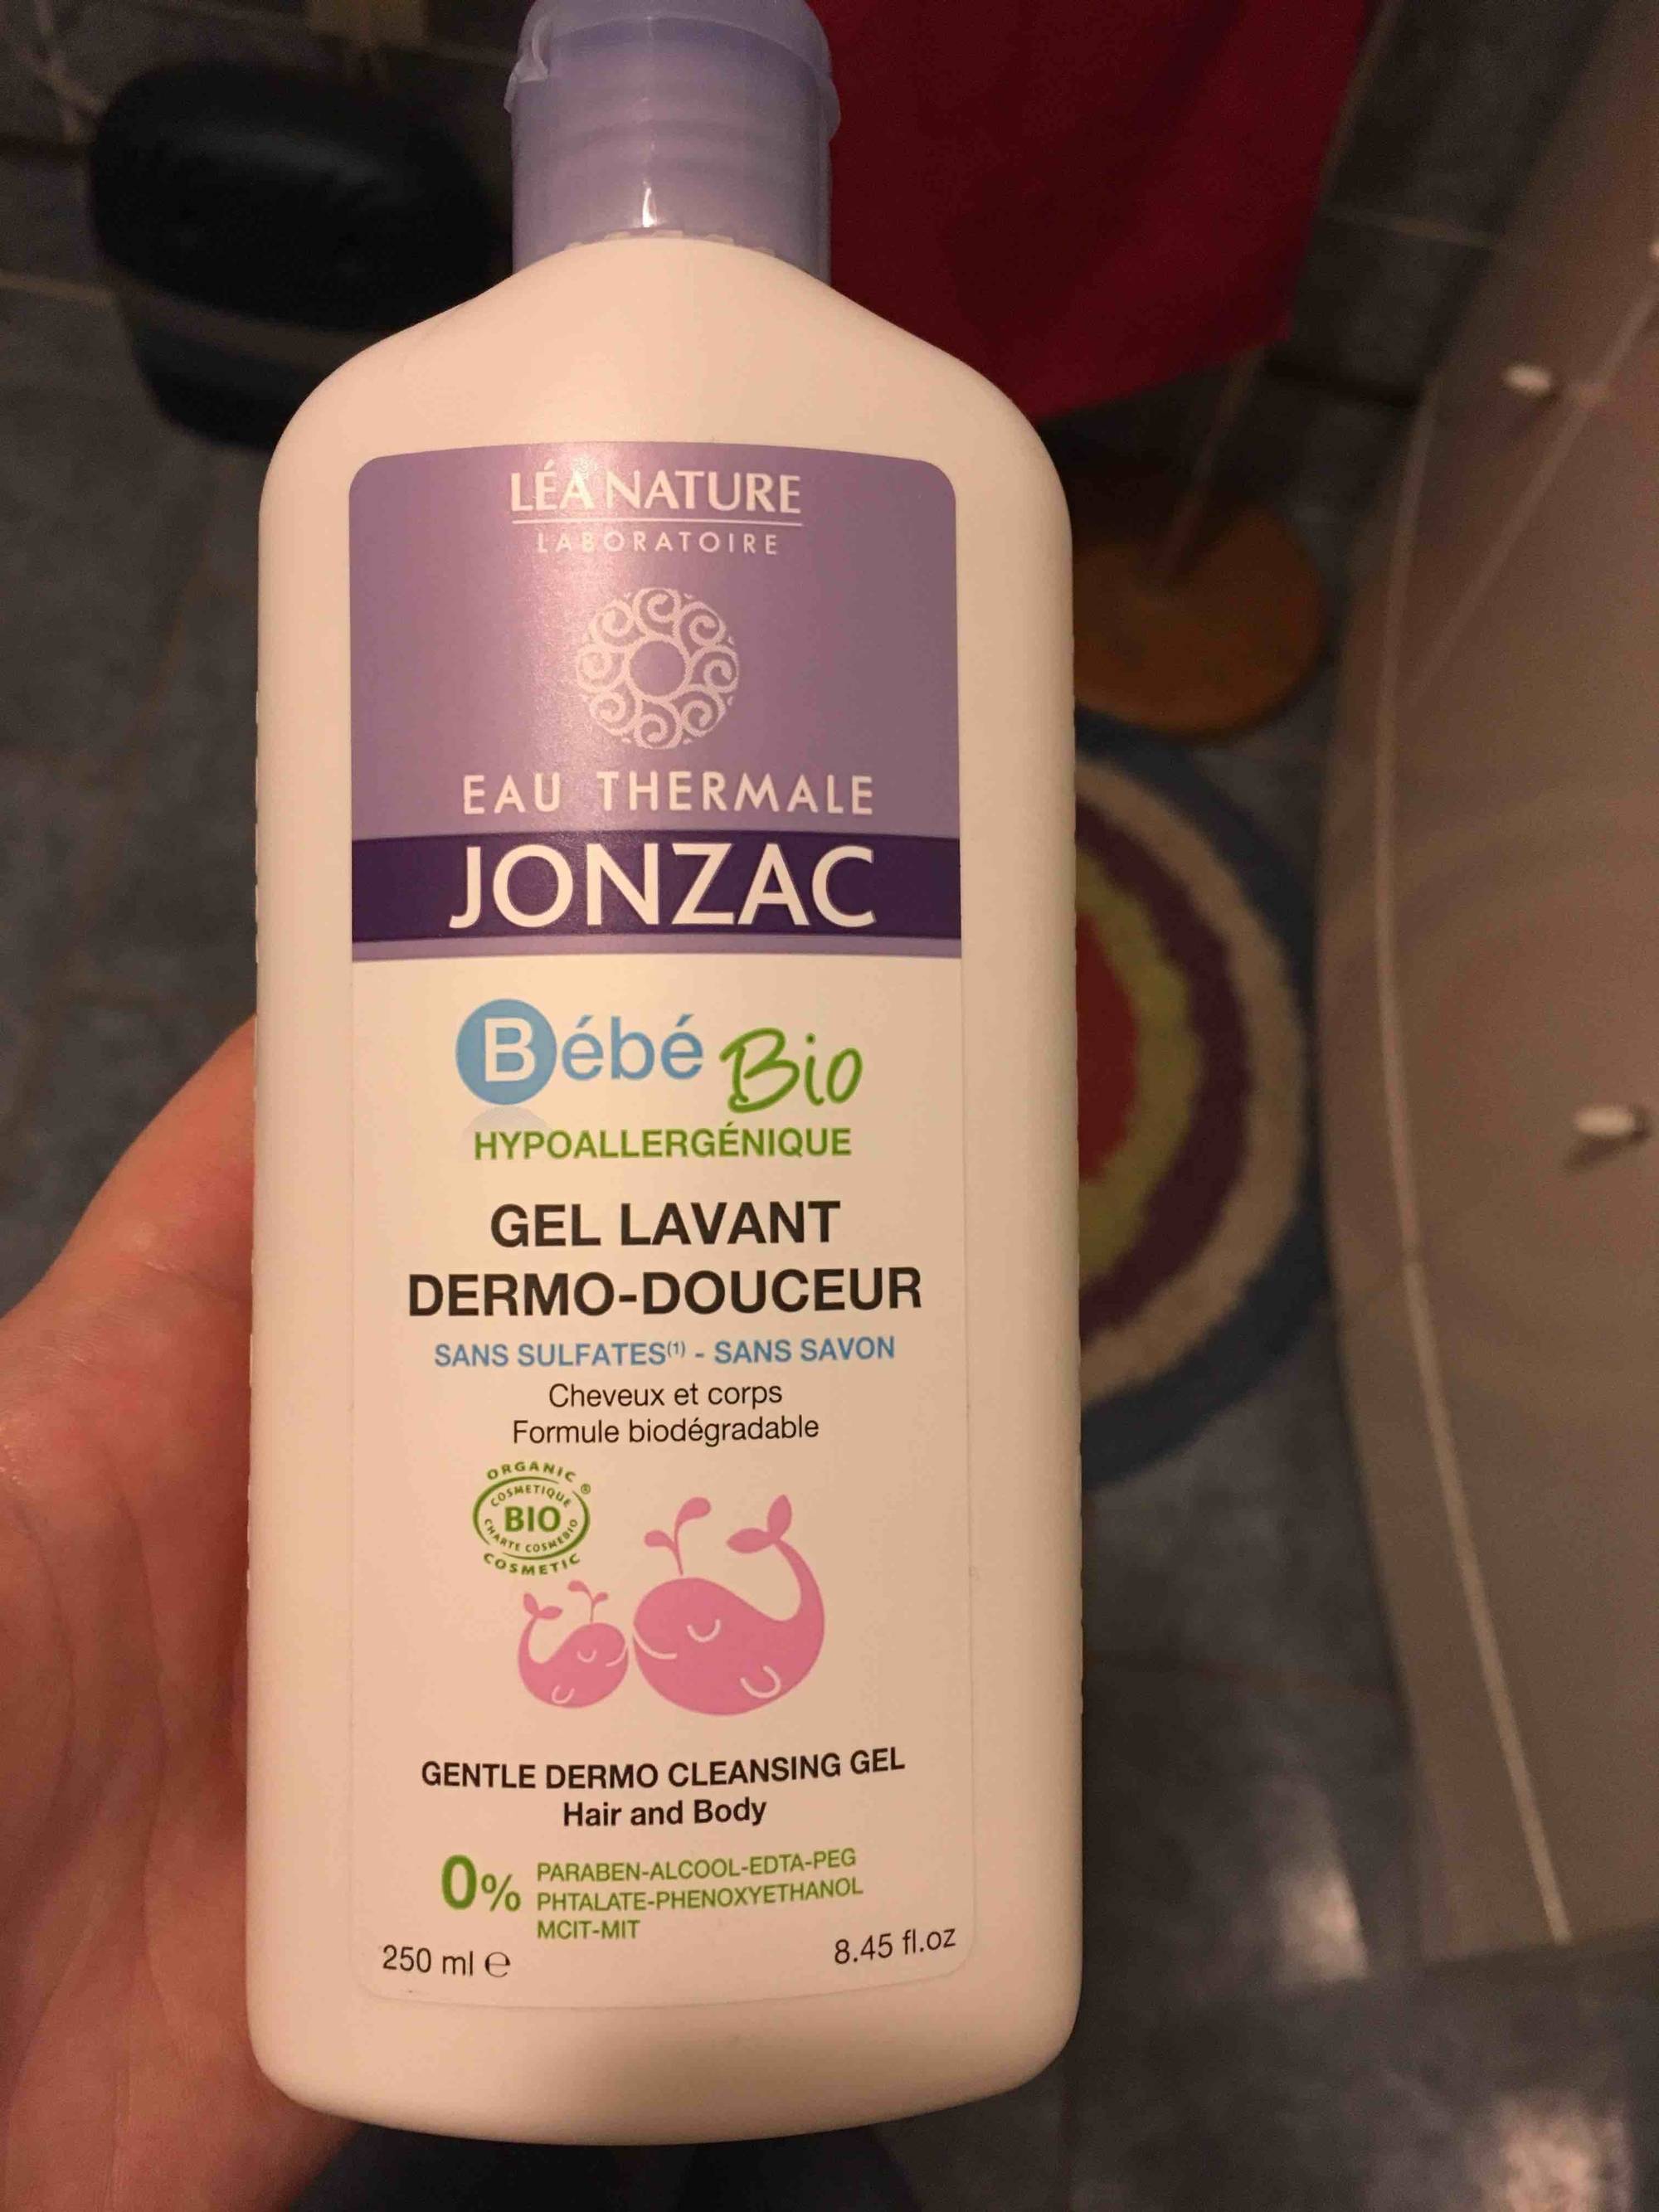 Eau Thermale Jonzac Bébé Bio Gel lavant dermo-douceur - 1 L - INCI Beauty